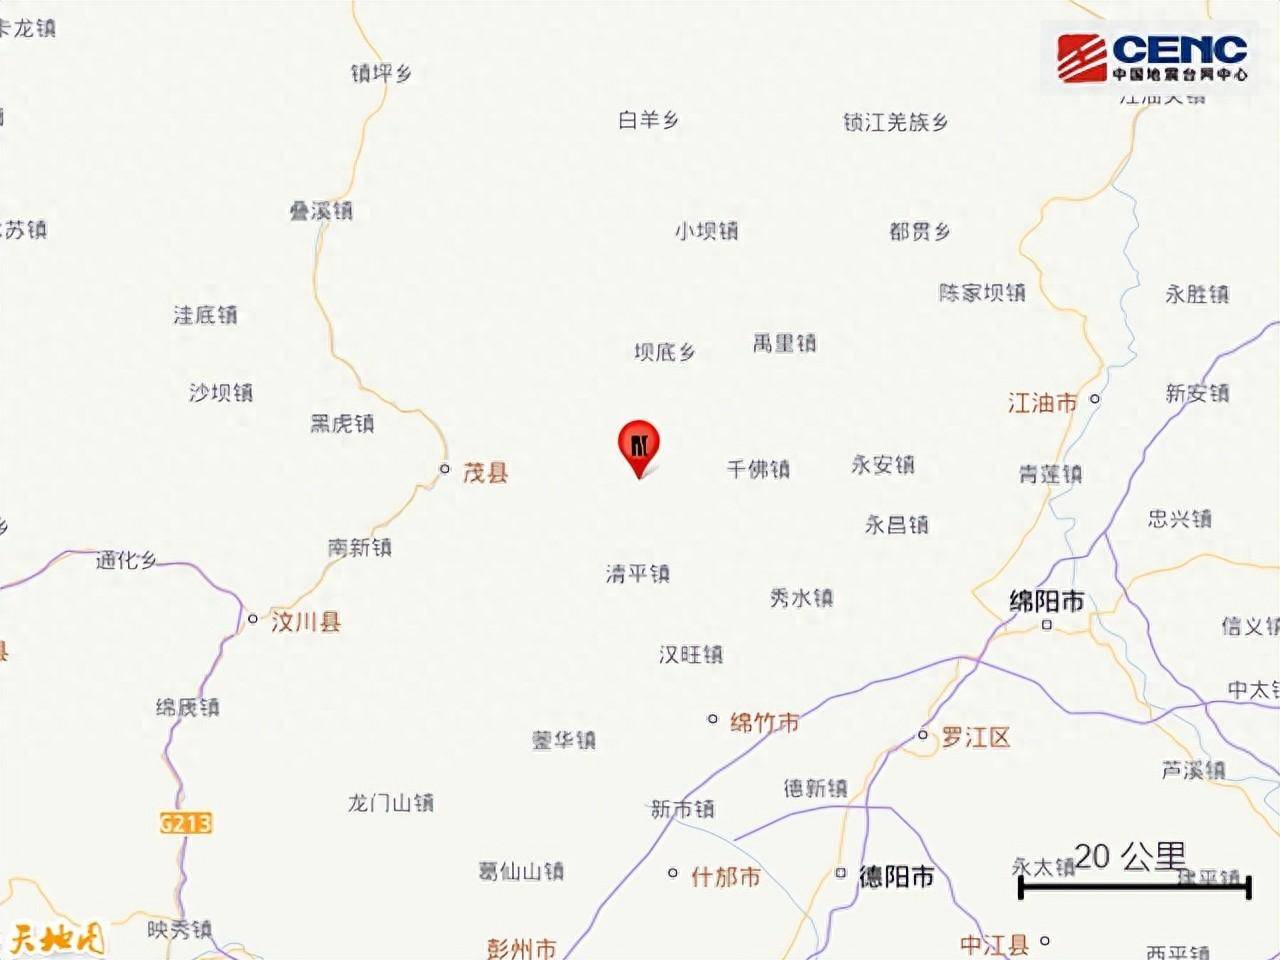 四川深夜6.0地震 至少已6死75傷 - 新聞 - Rti 中央廣播電臺